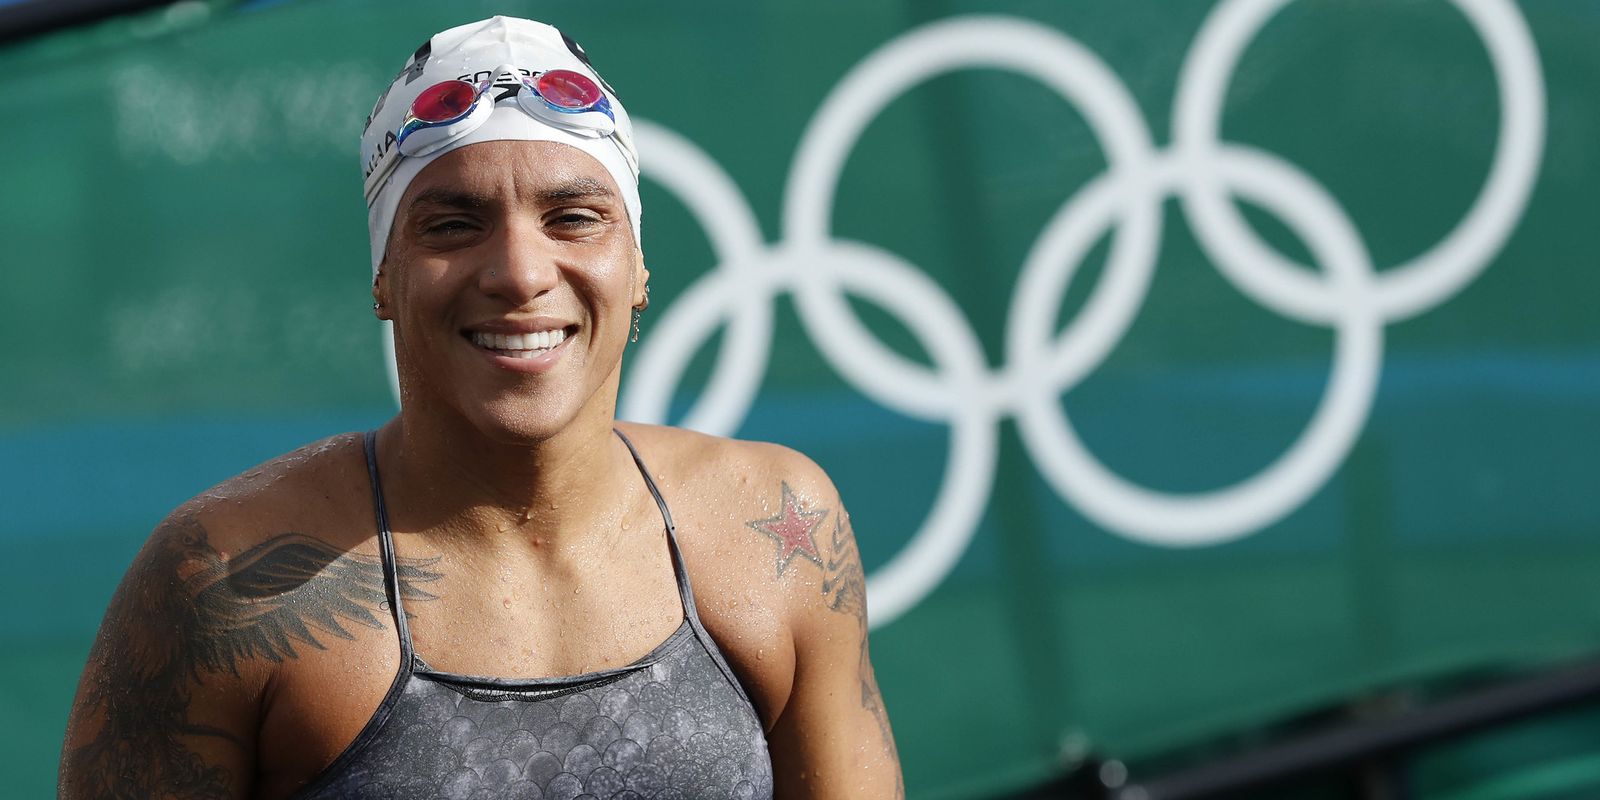 Championne olympique, Ana Marcela remporte l’or de la Coupe d’Europe Open Water